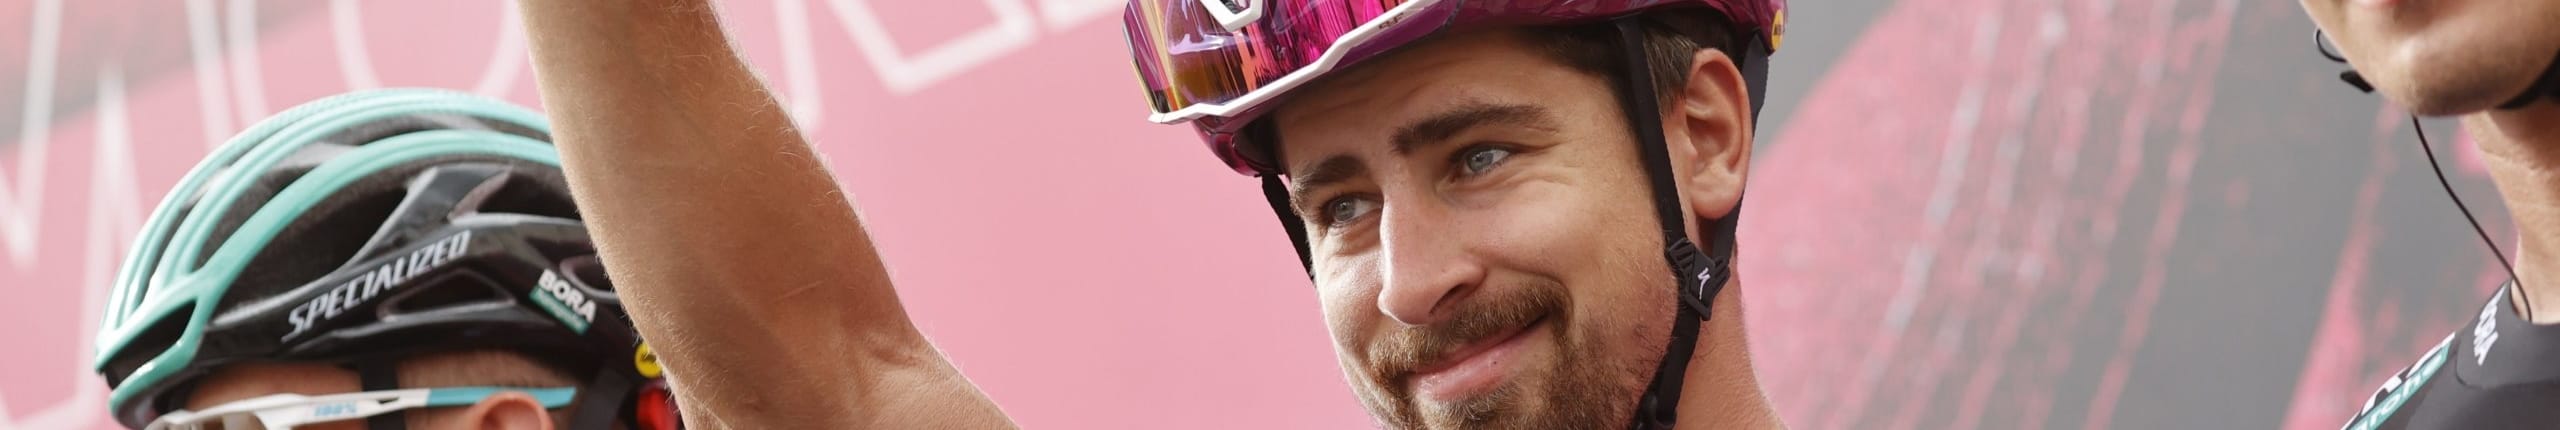 Giro d'Italia 2020, quote e favoriti per la tappa 6: è il momento di Sagan?